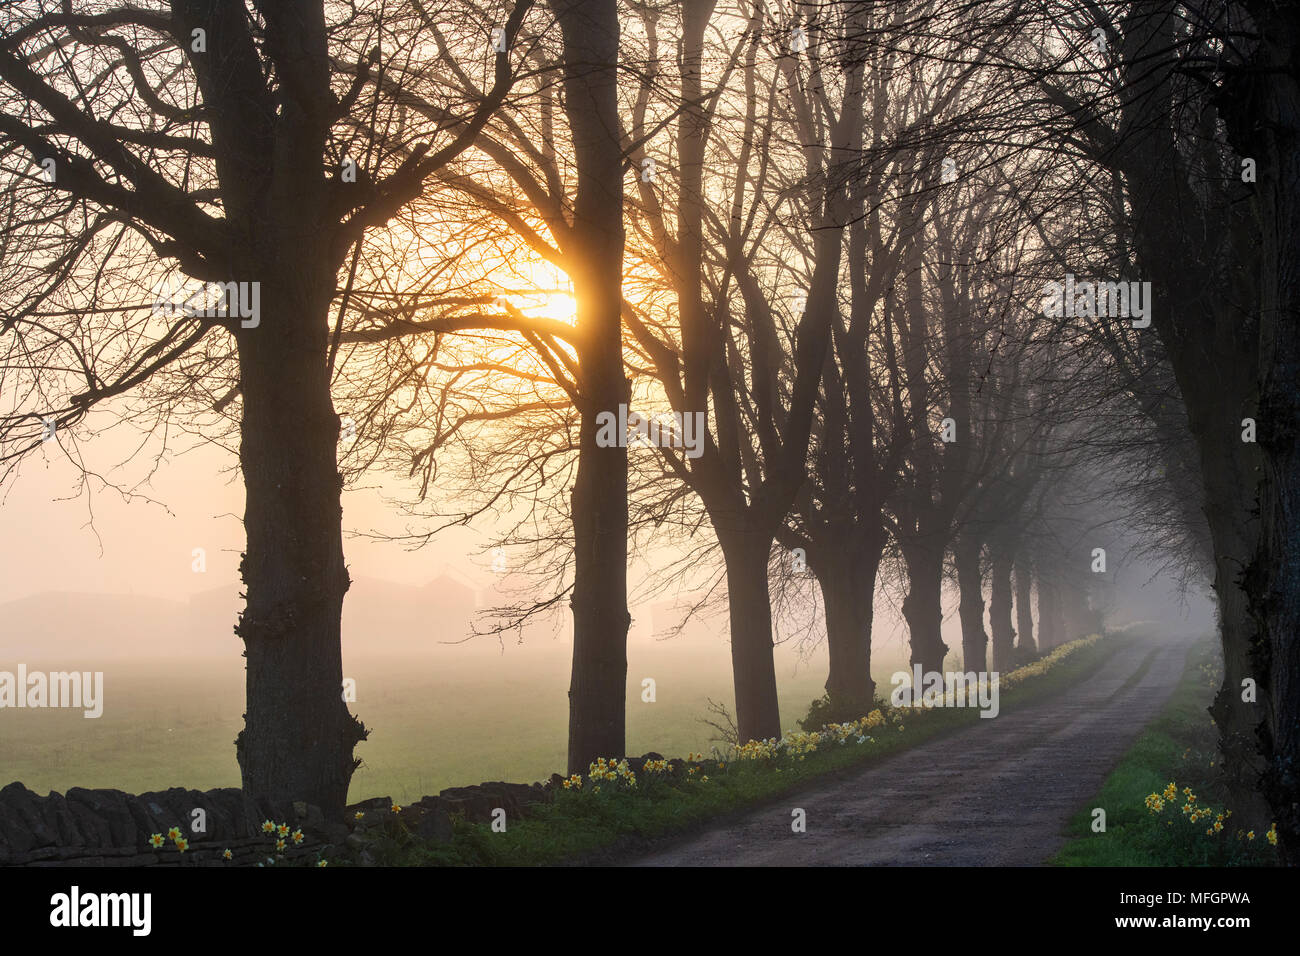 Fagus. Buche, von Bäumen gesäumten Straße im frühen Morgennebel bei Sonnenaufgang. Silhouette. Oxfordshire, UK Stockfoto